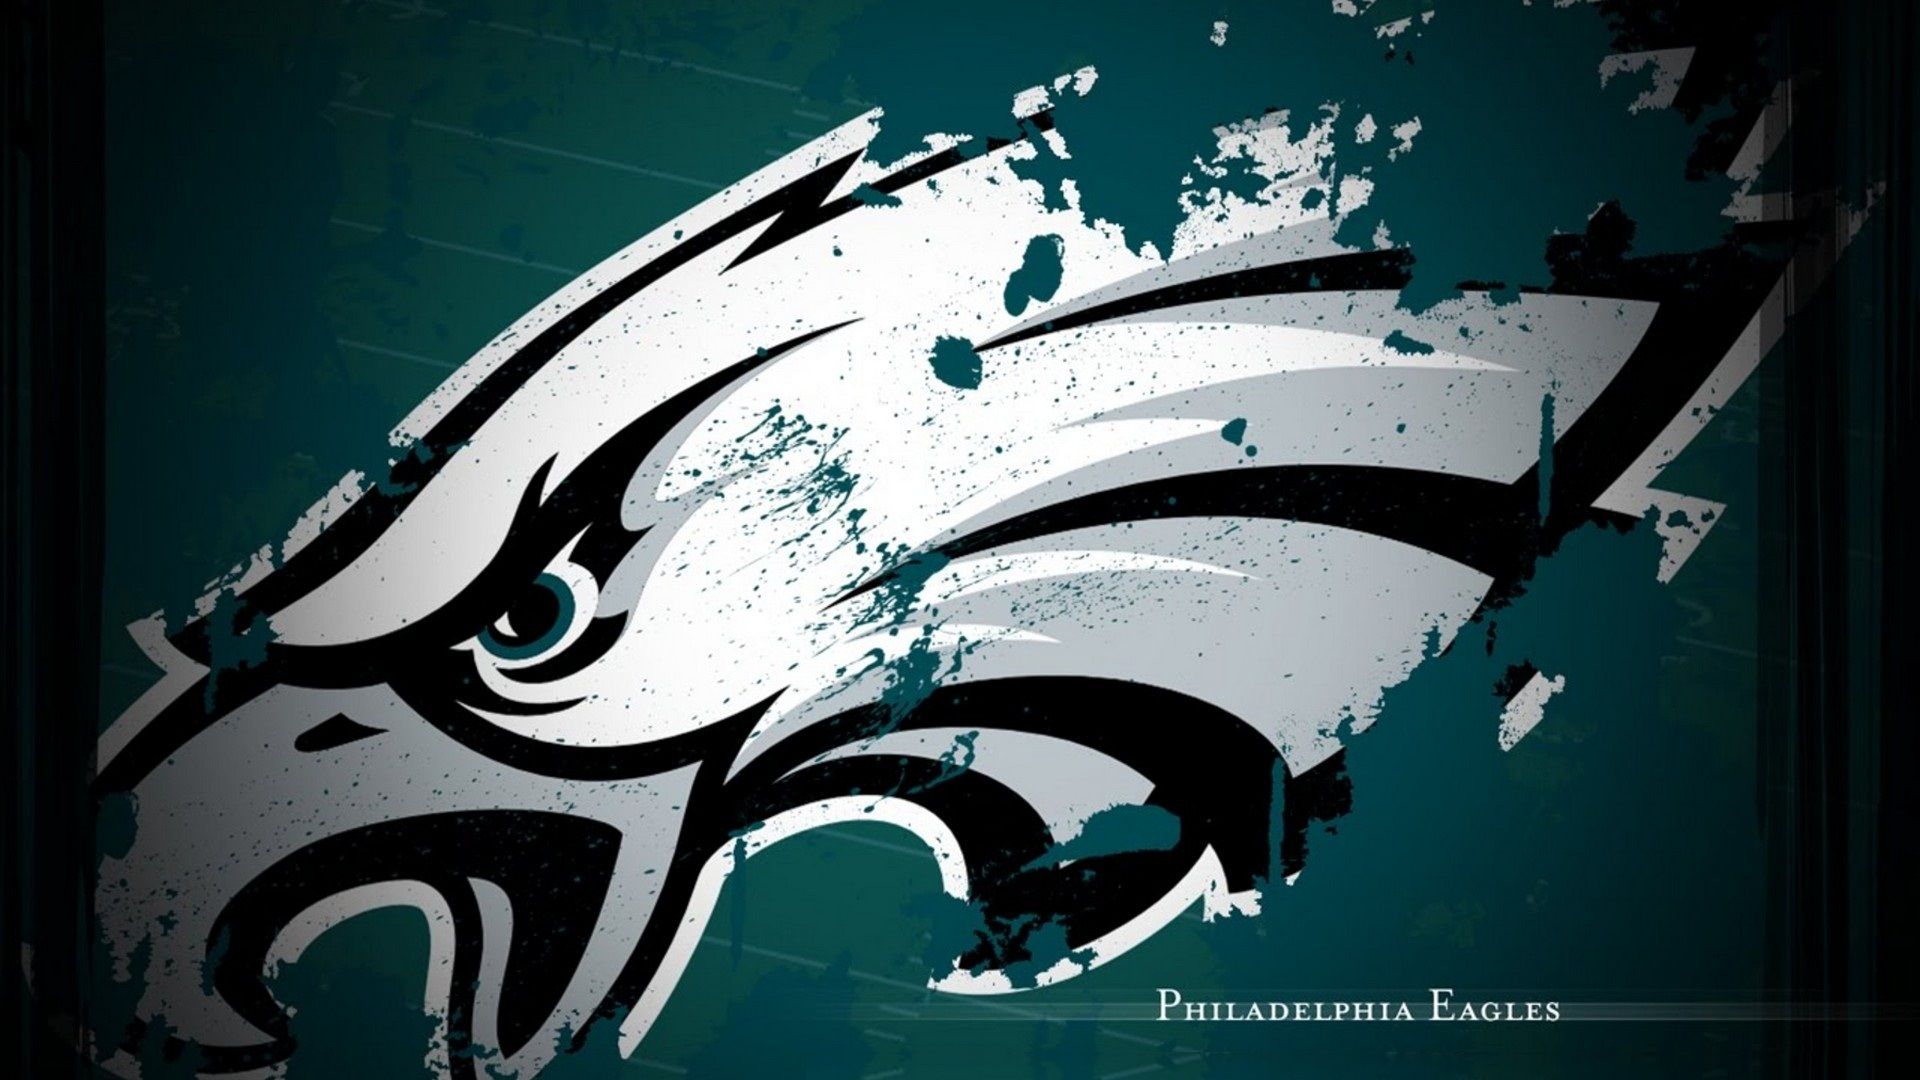 Philadelphia Eagles For PC Wallpaper NFL Football Wallpaper. Philadelphia eagles wallpaper, Philadelphia eagles logo, Philadelphia eagles